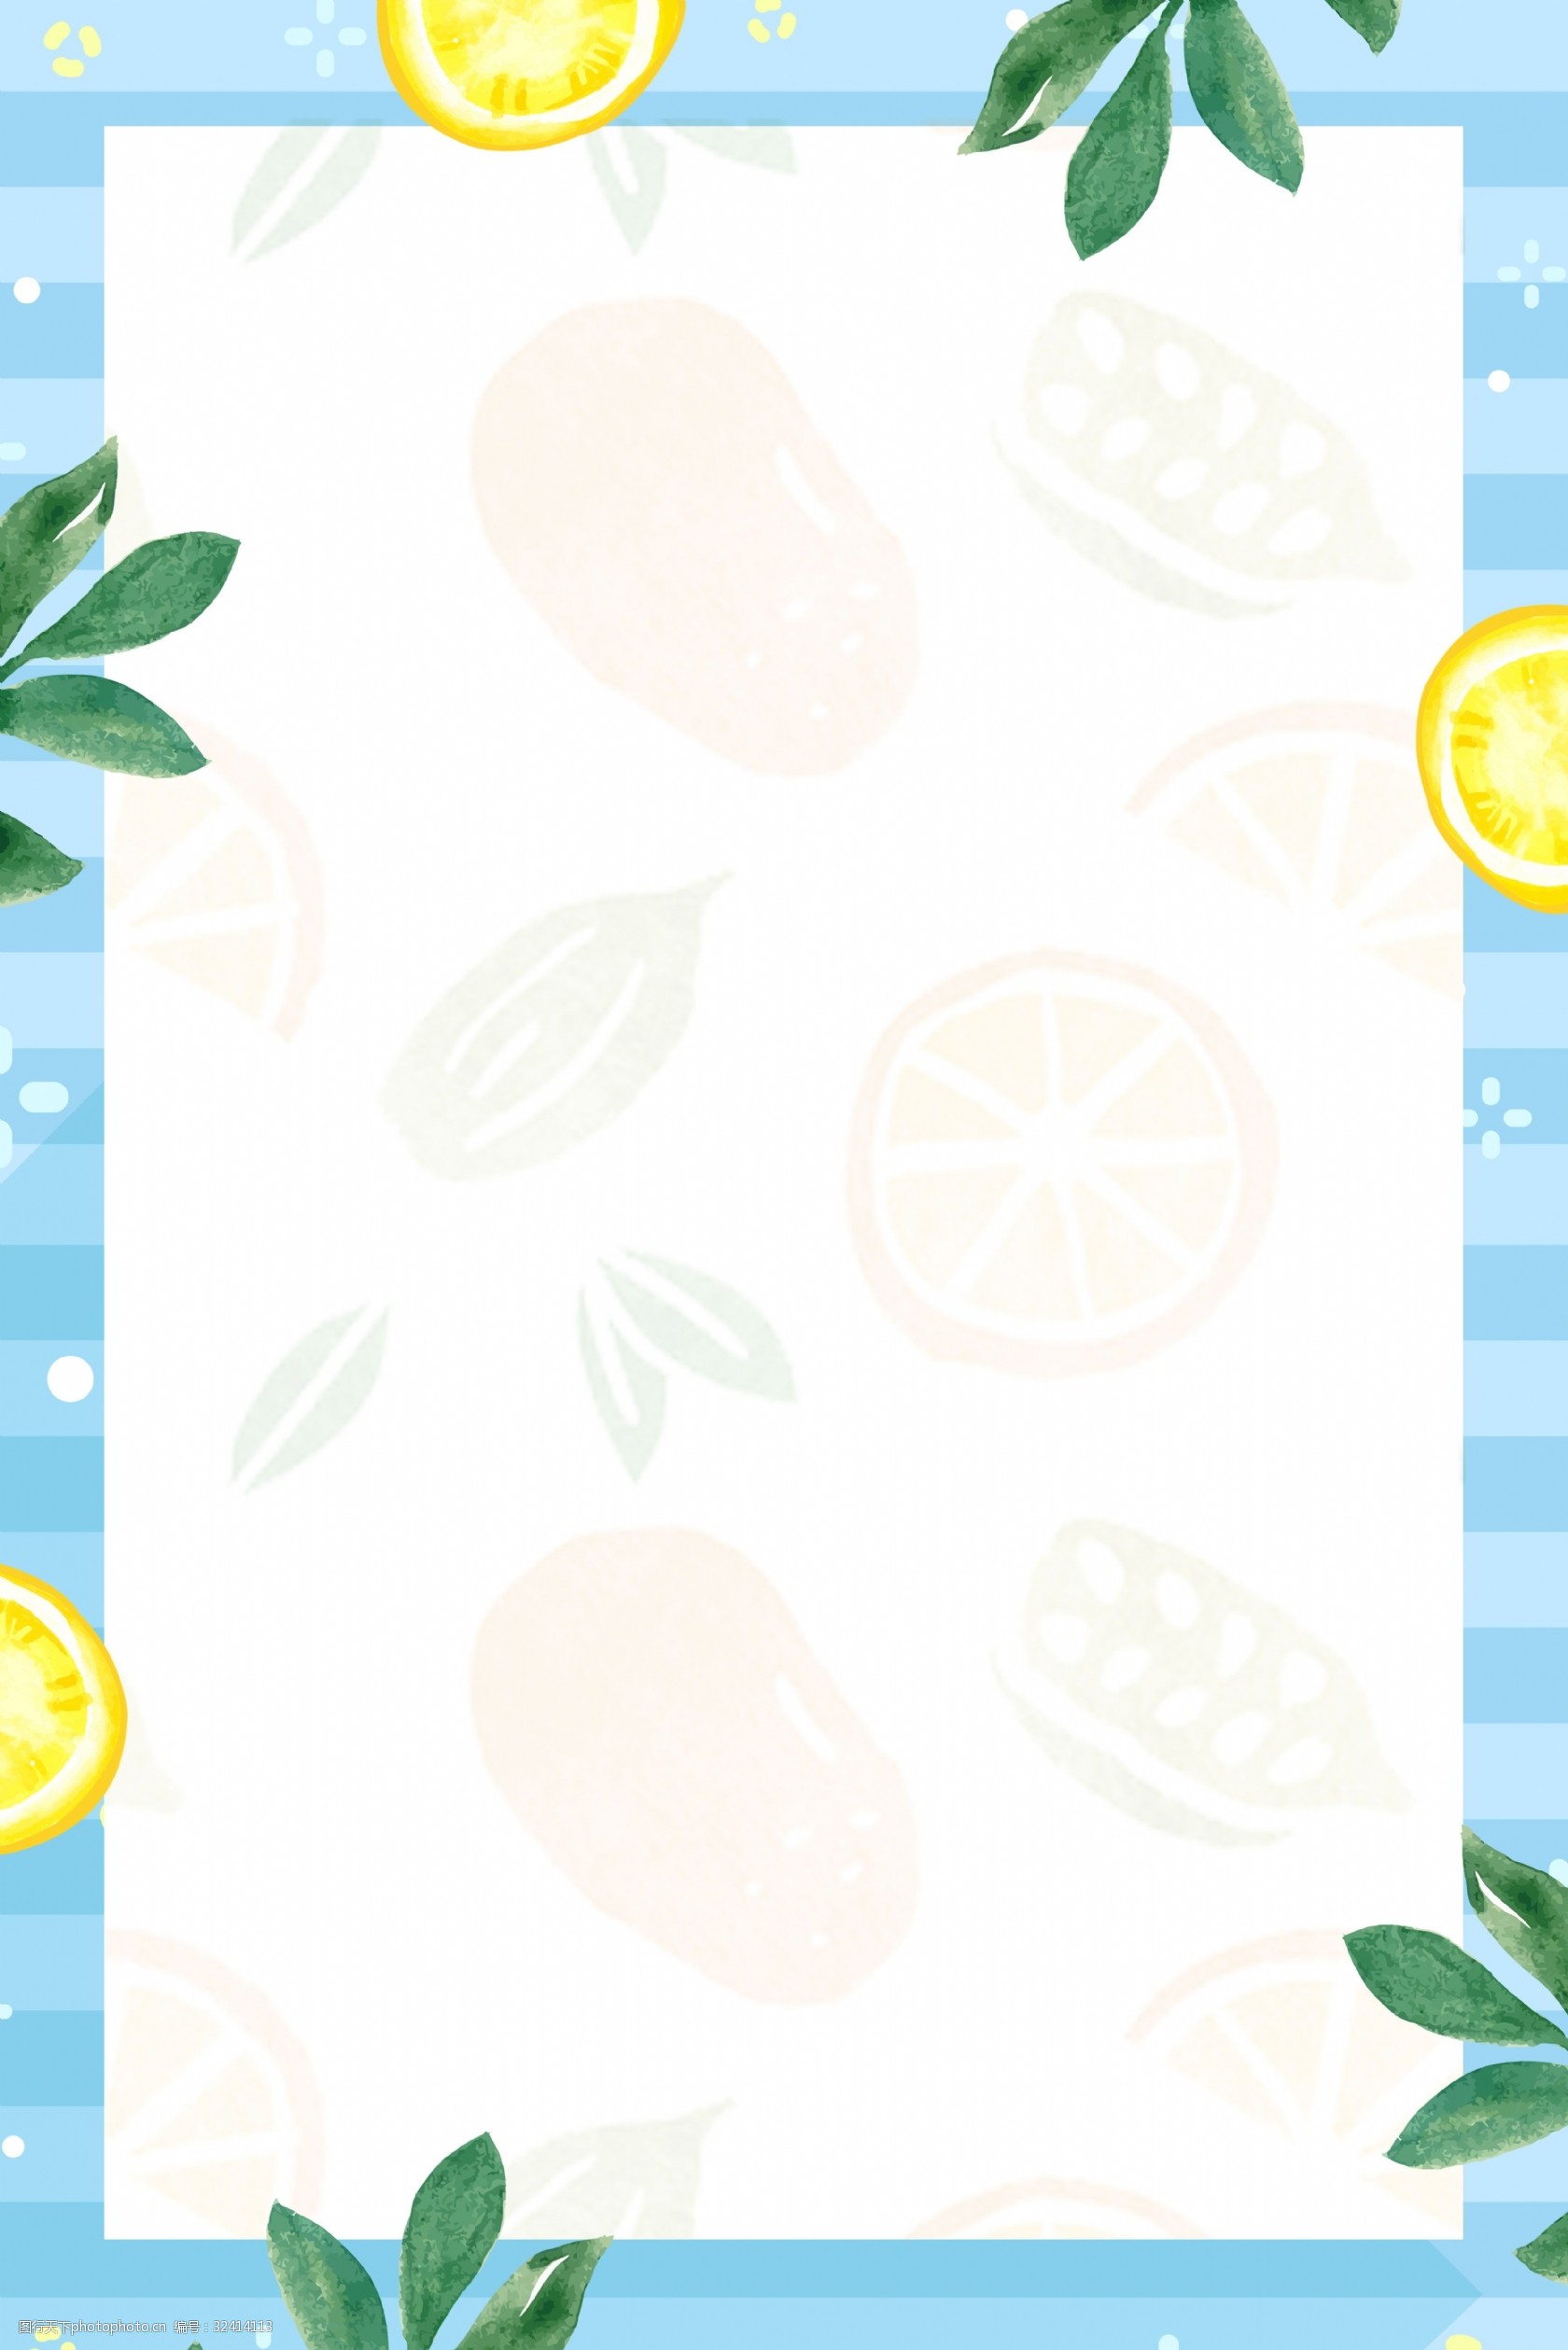 小清新柠檬水果边框纹理海报 纹理 小清新 边框 水果 柠檬 手绘 树叶